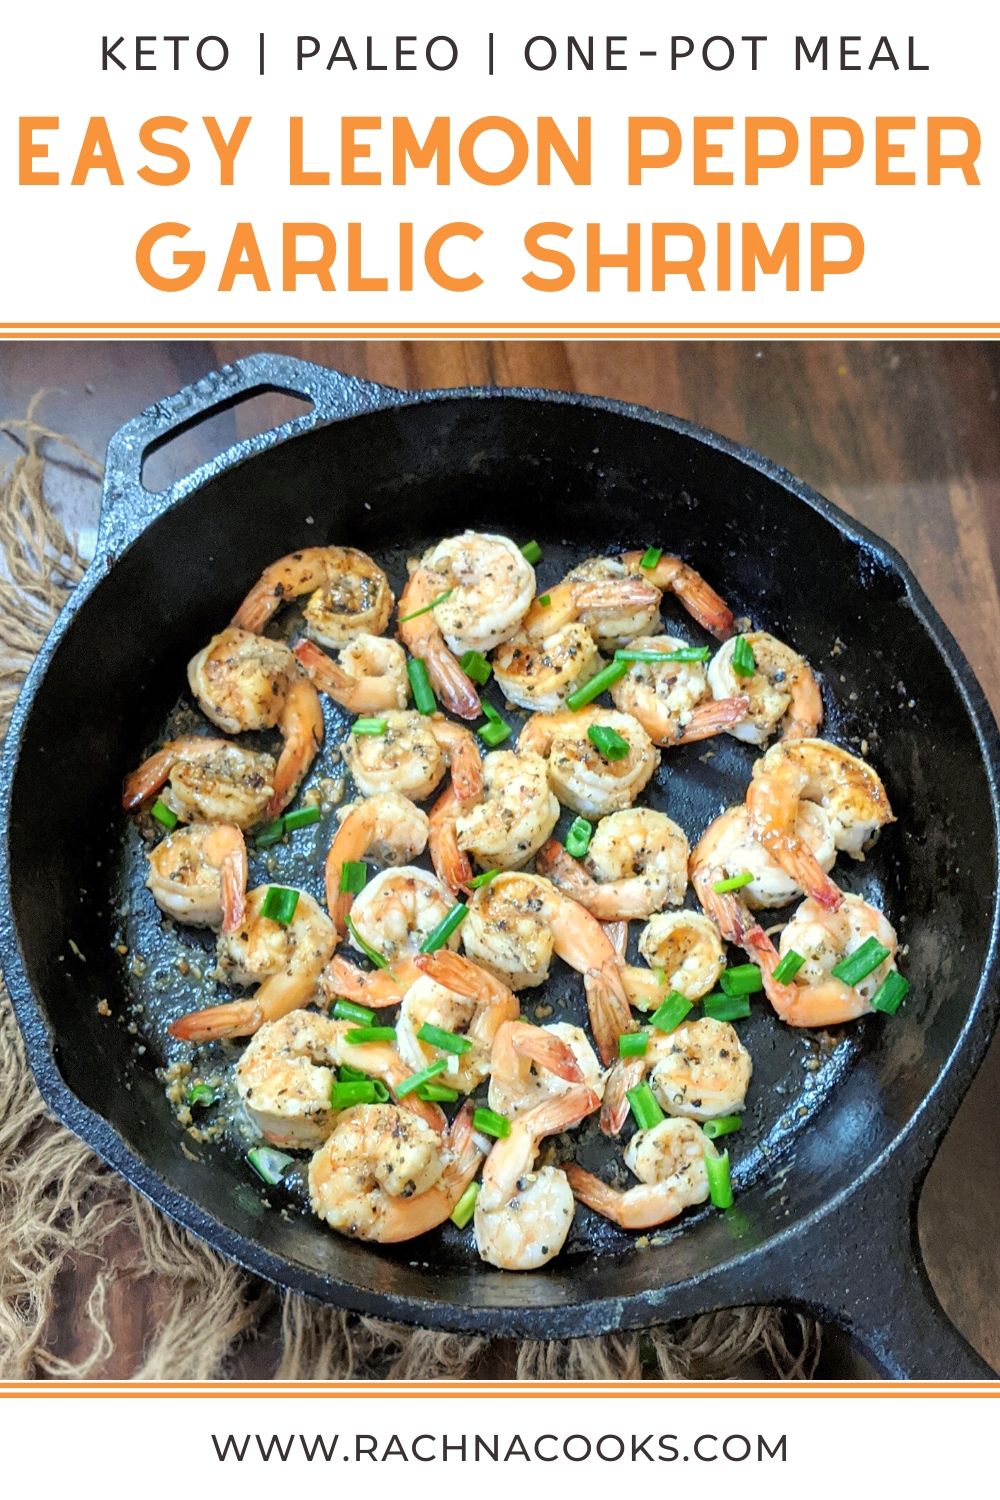 Easy Lemon Pepper Garlic Shrimp Recipe - Rachna cooks